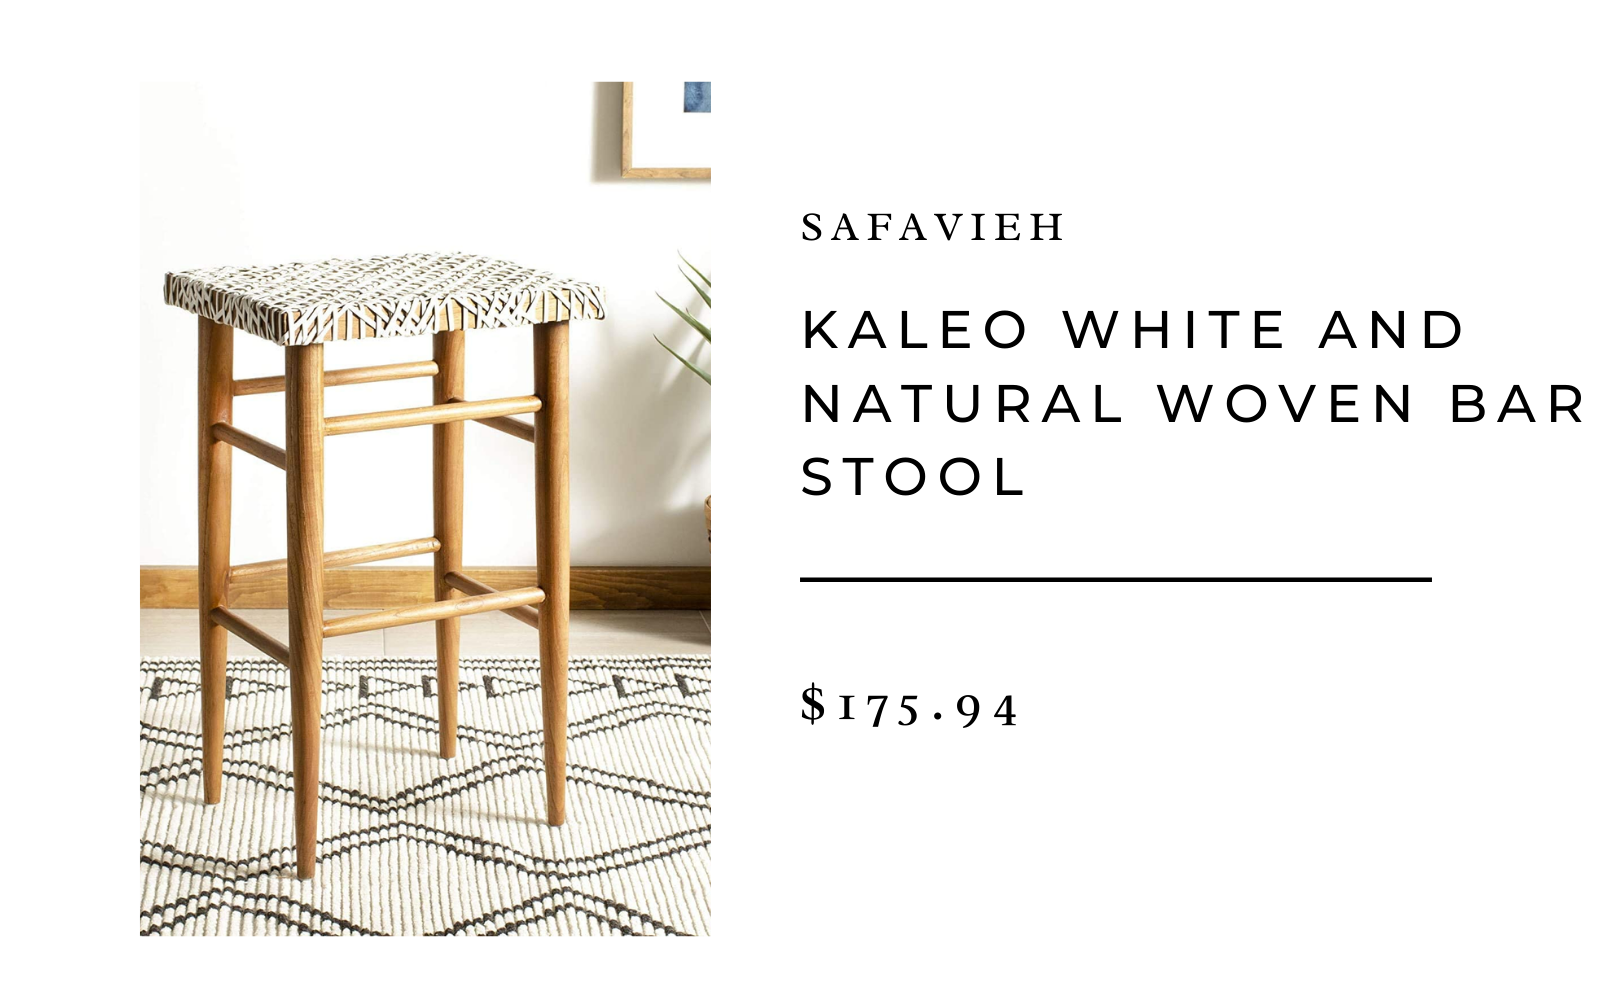 safavieh kaleo white natural woven stool